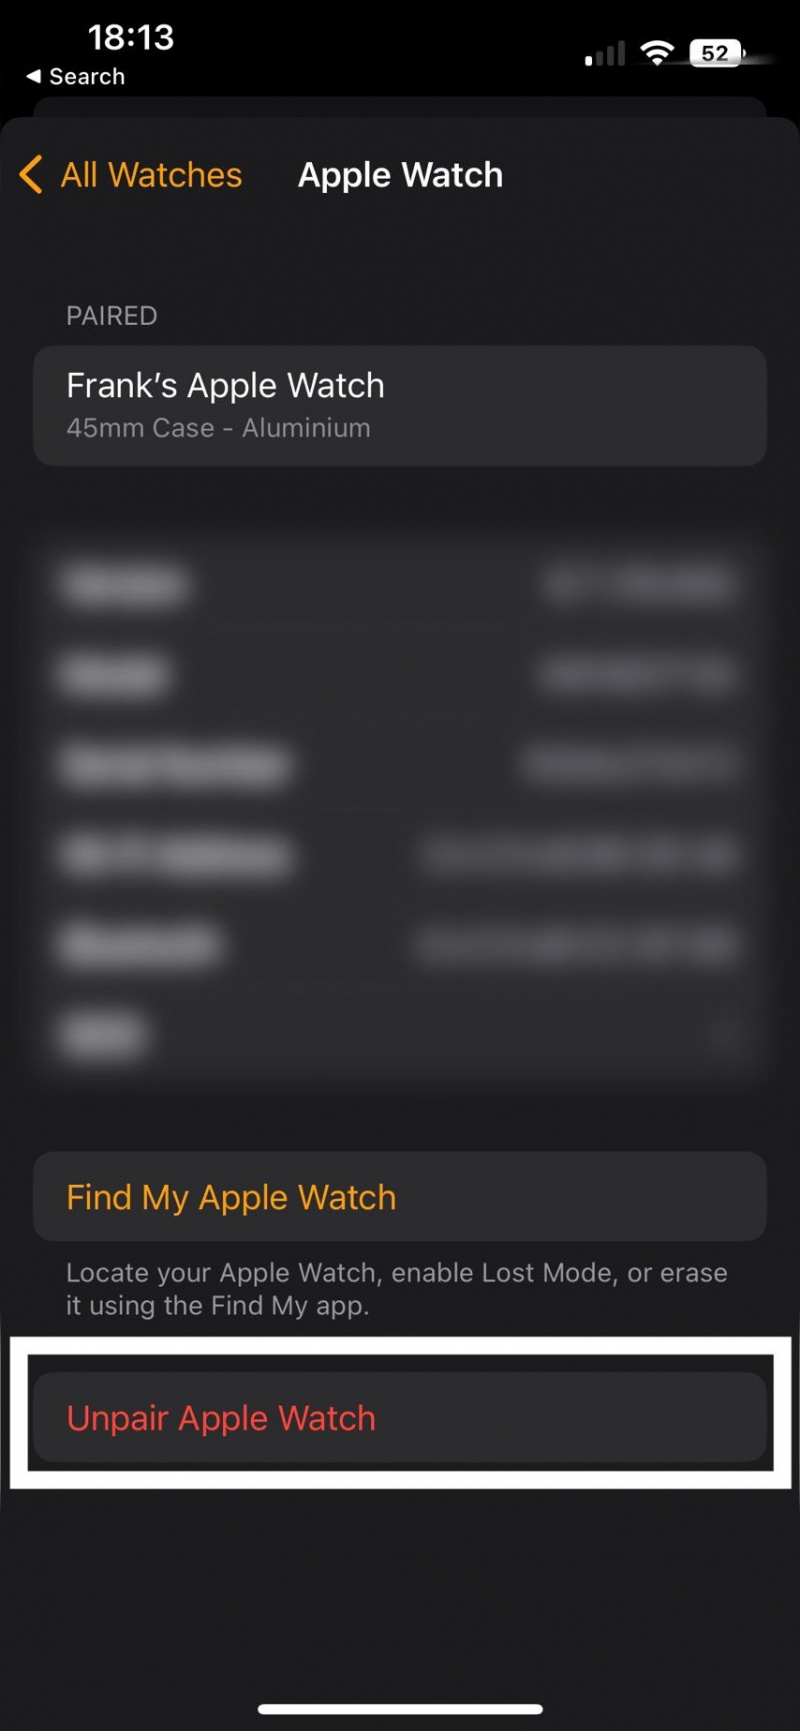   كان من المفترض أن تنقر لقطة شاشة لتطبيق Watch الذي يظهر لإلغاء إقران Apple Watch